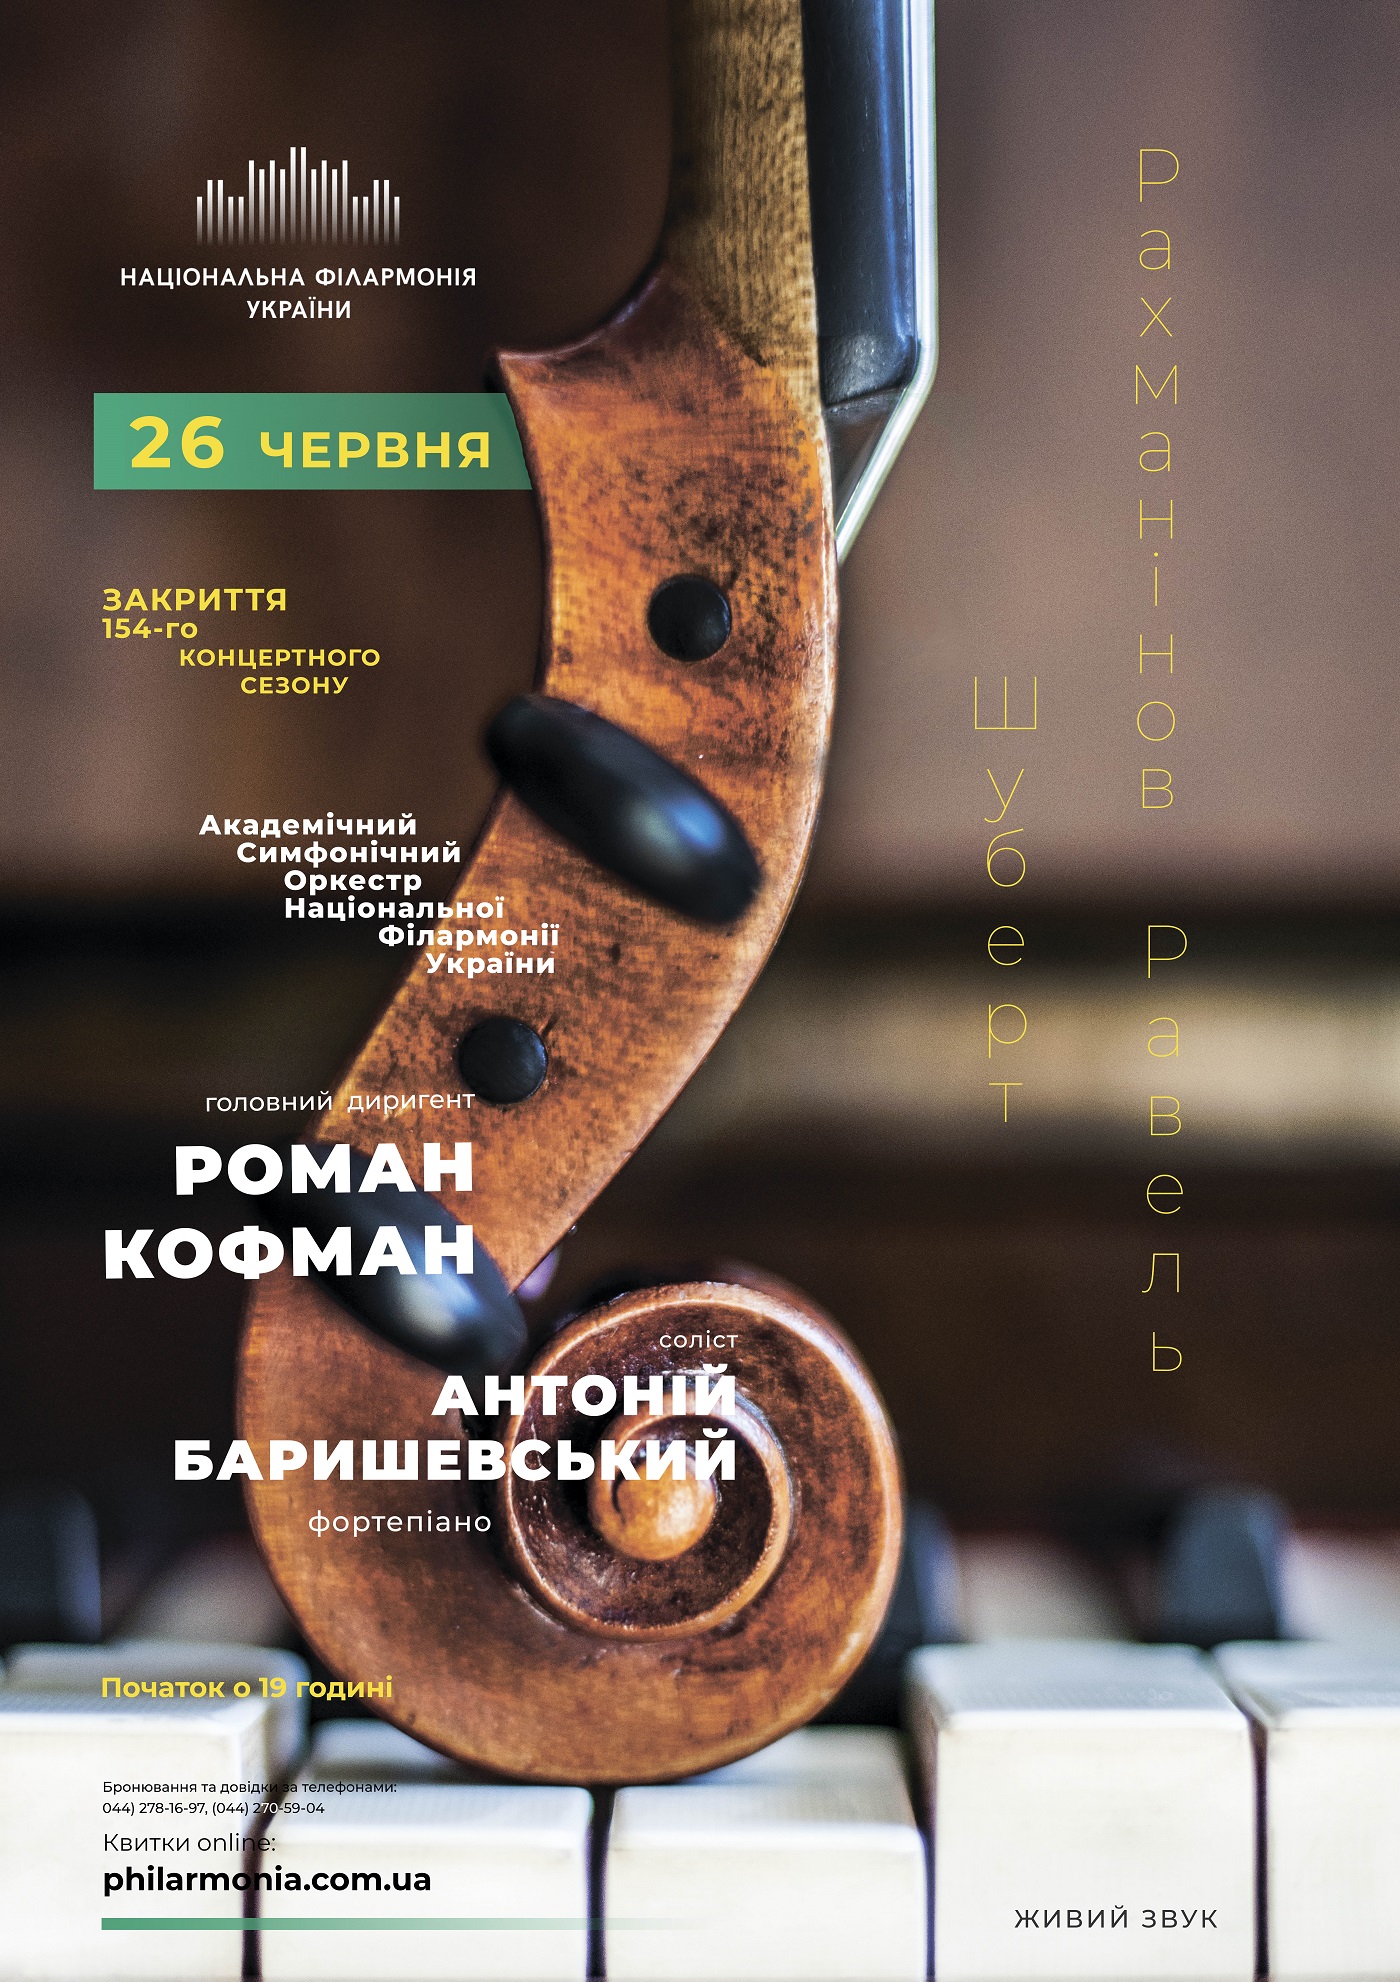 154-й сезон Національної філармонії України закриють Антоній Баришевський і Роман Кофман